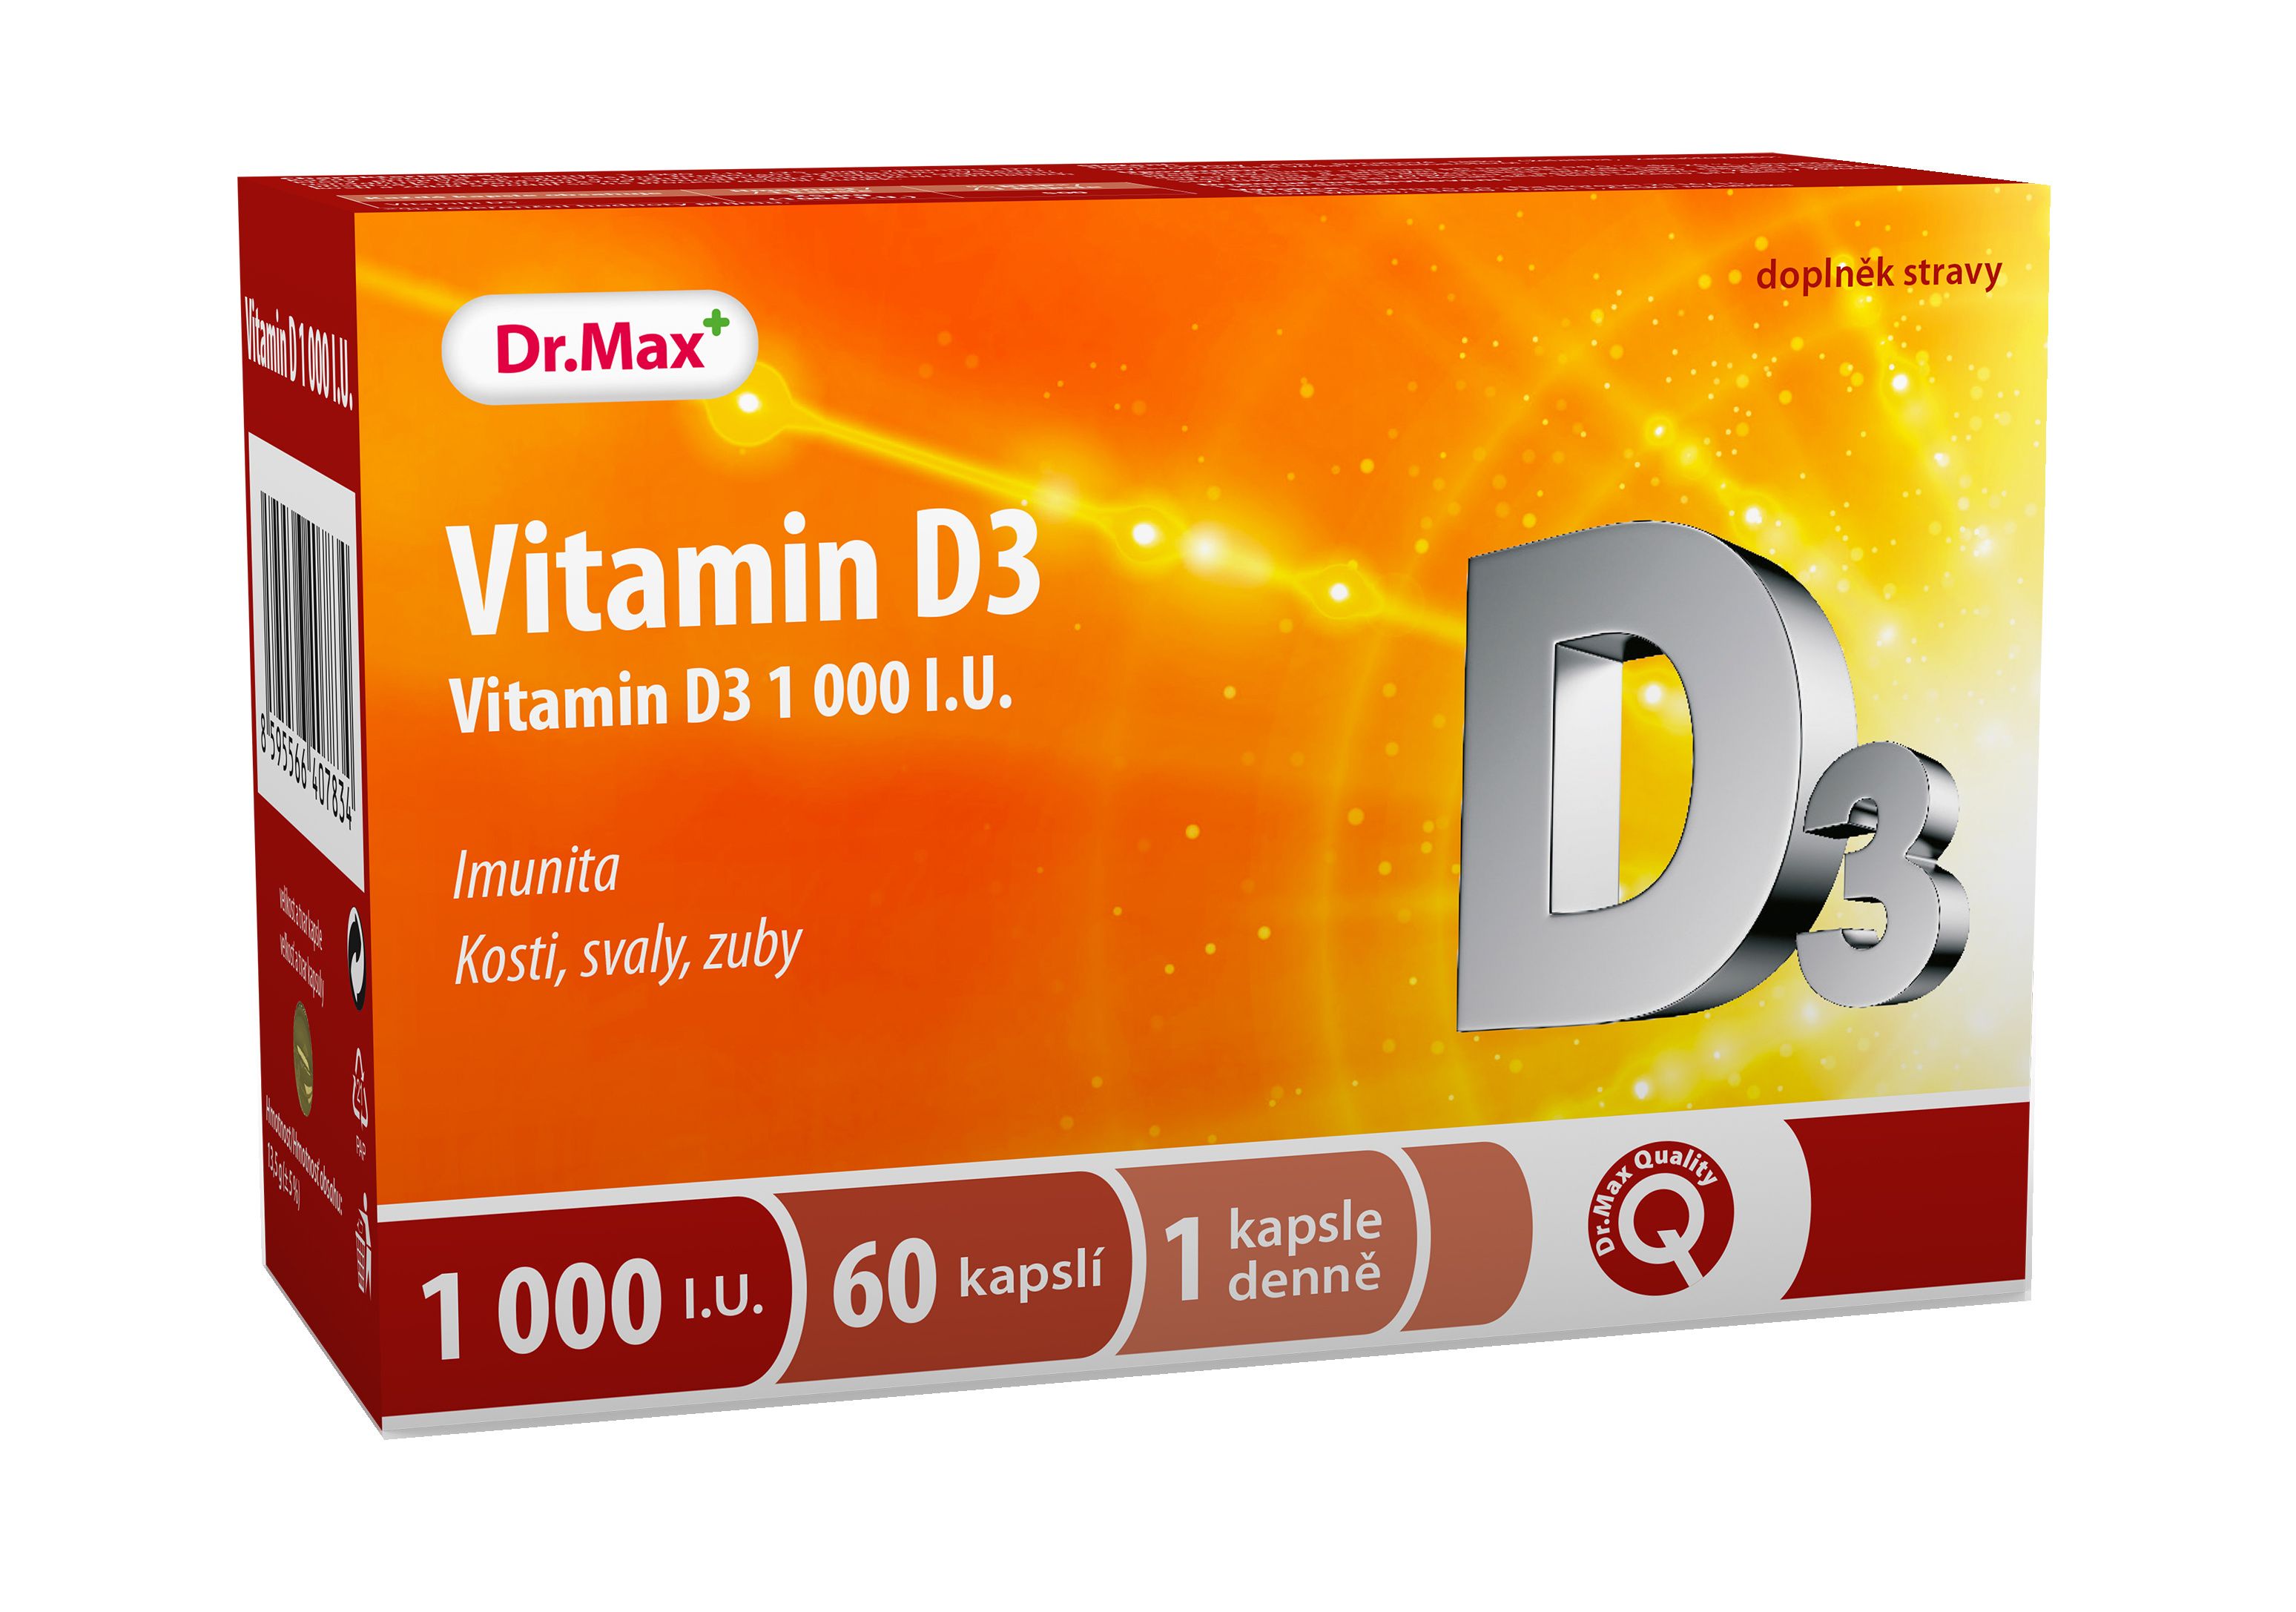 Dr.Max Vitamin D3 1000 I.U. 60 kapslí Dr.Max